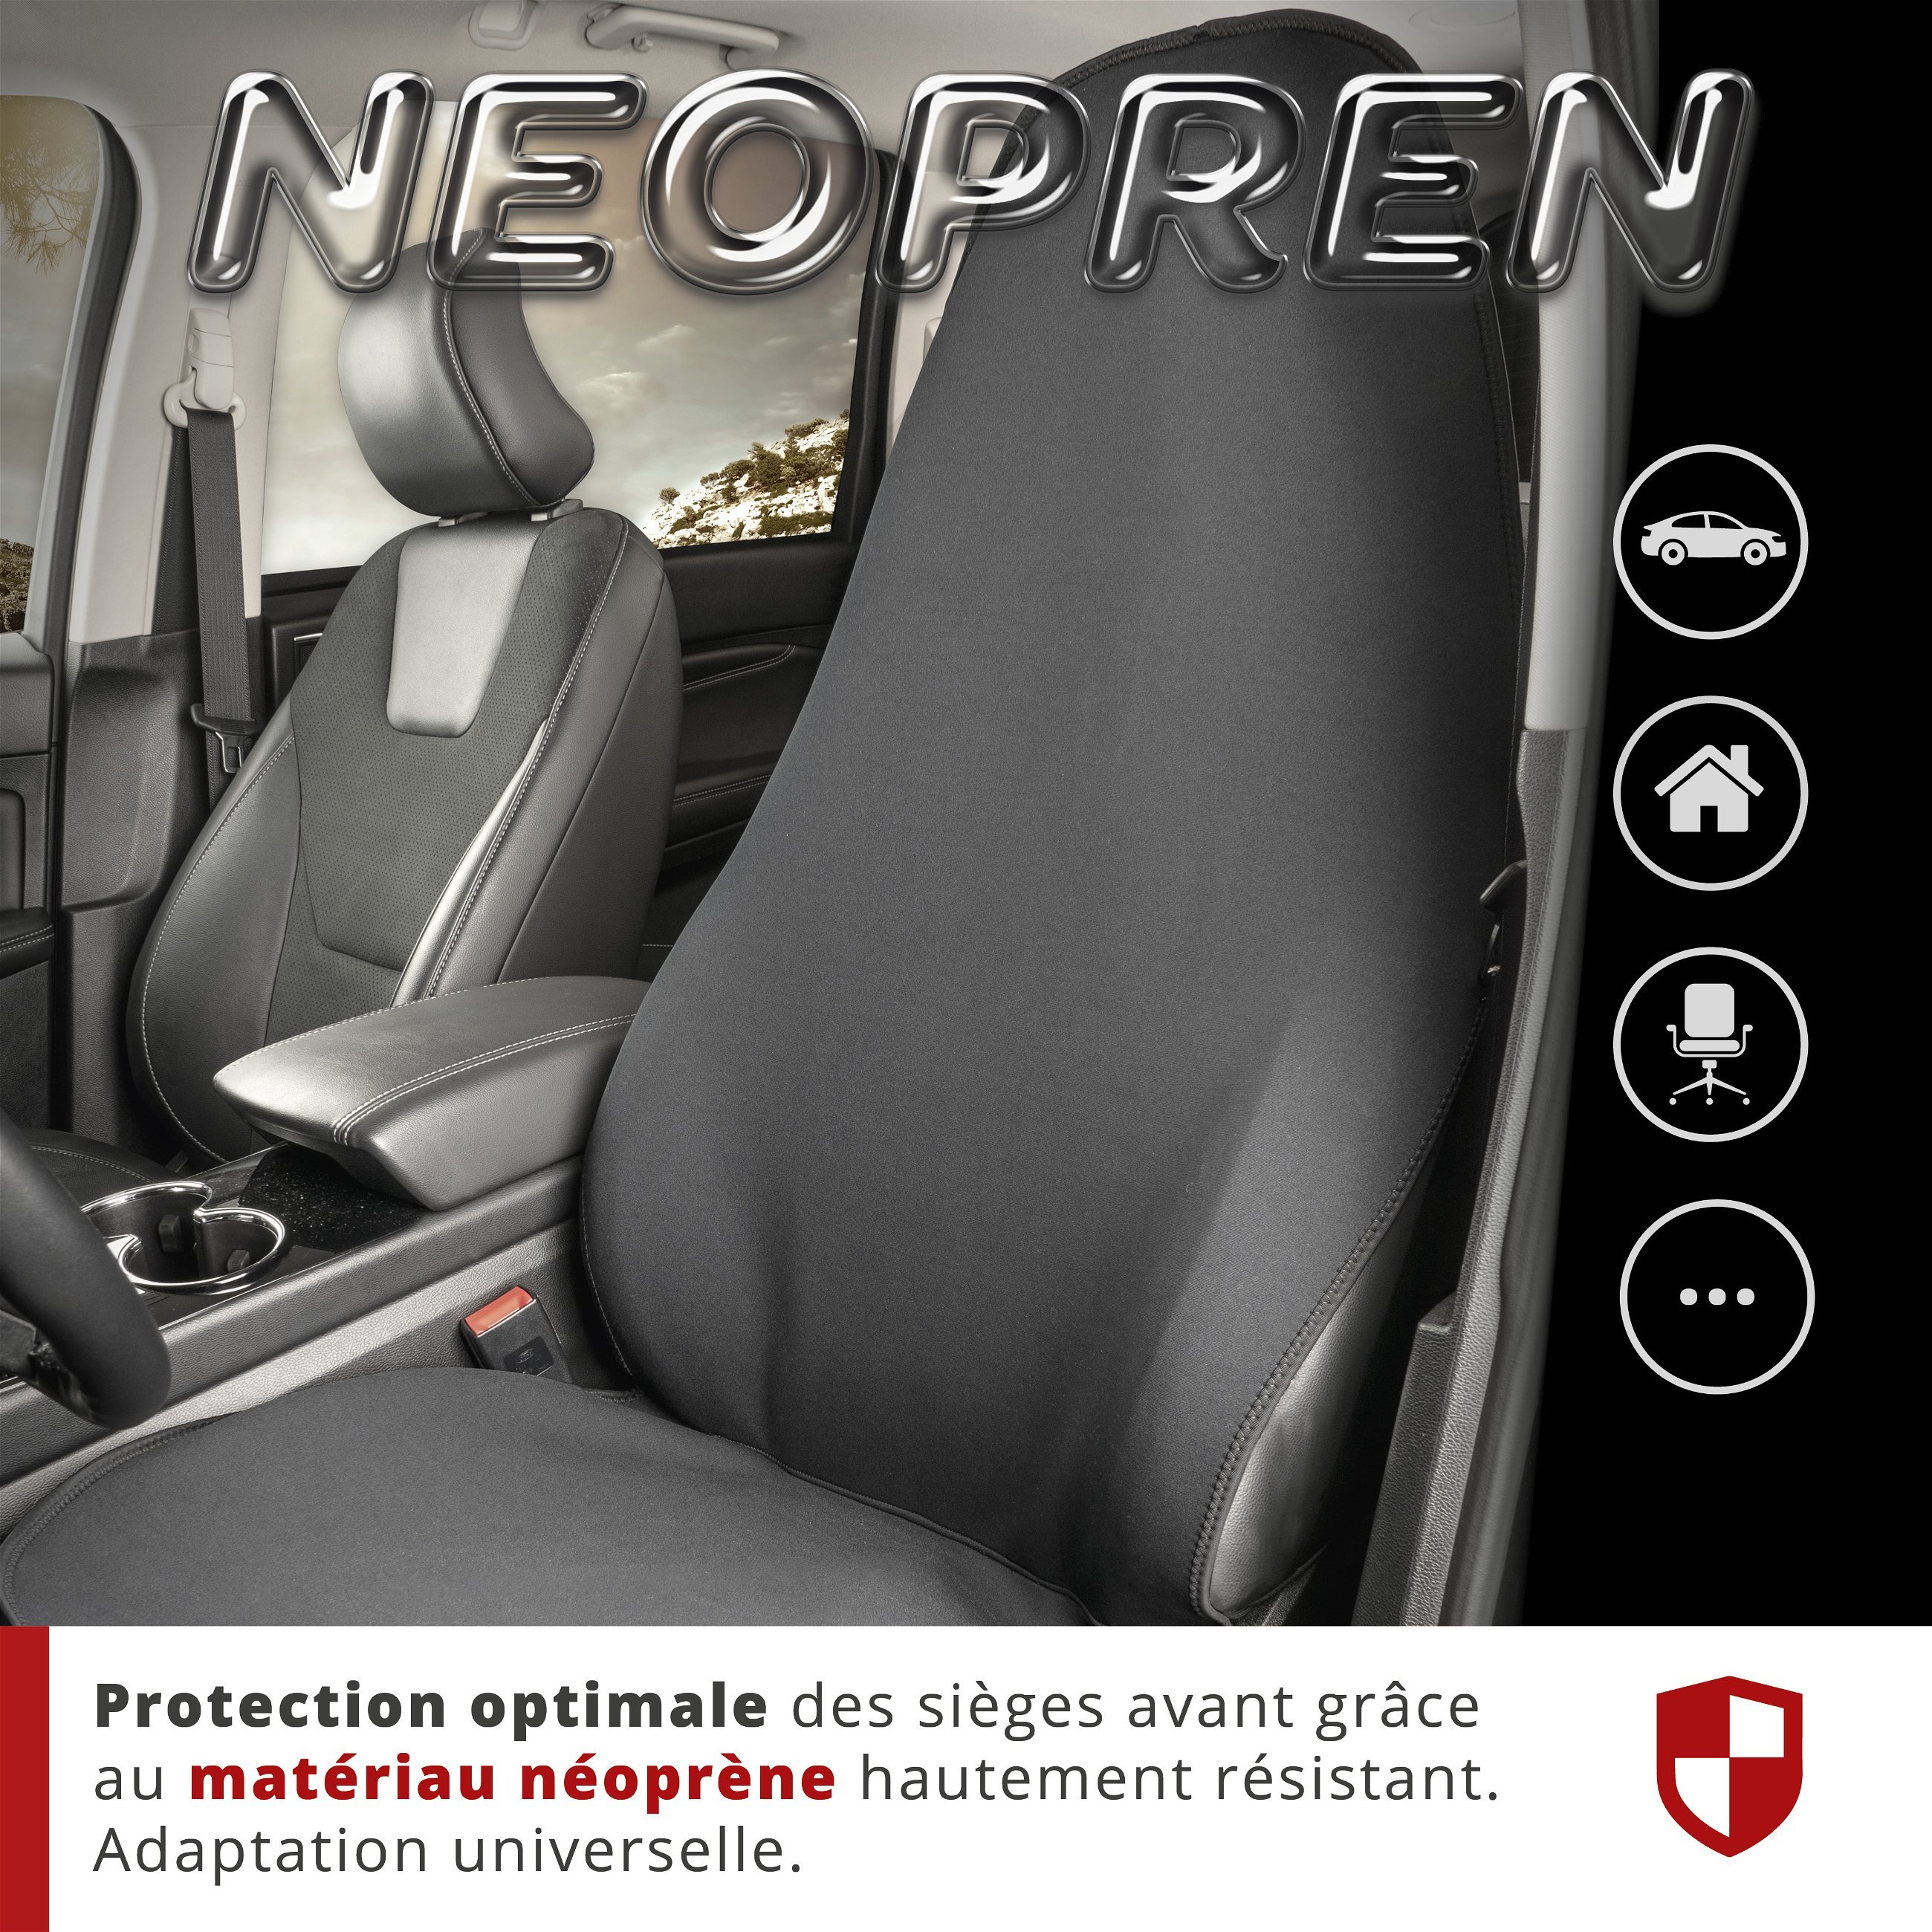 Housse de siège en néoprène pour voiture, protection de siège avant étanche, housse de protection universelle et robuste pour voiture/camion